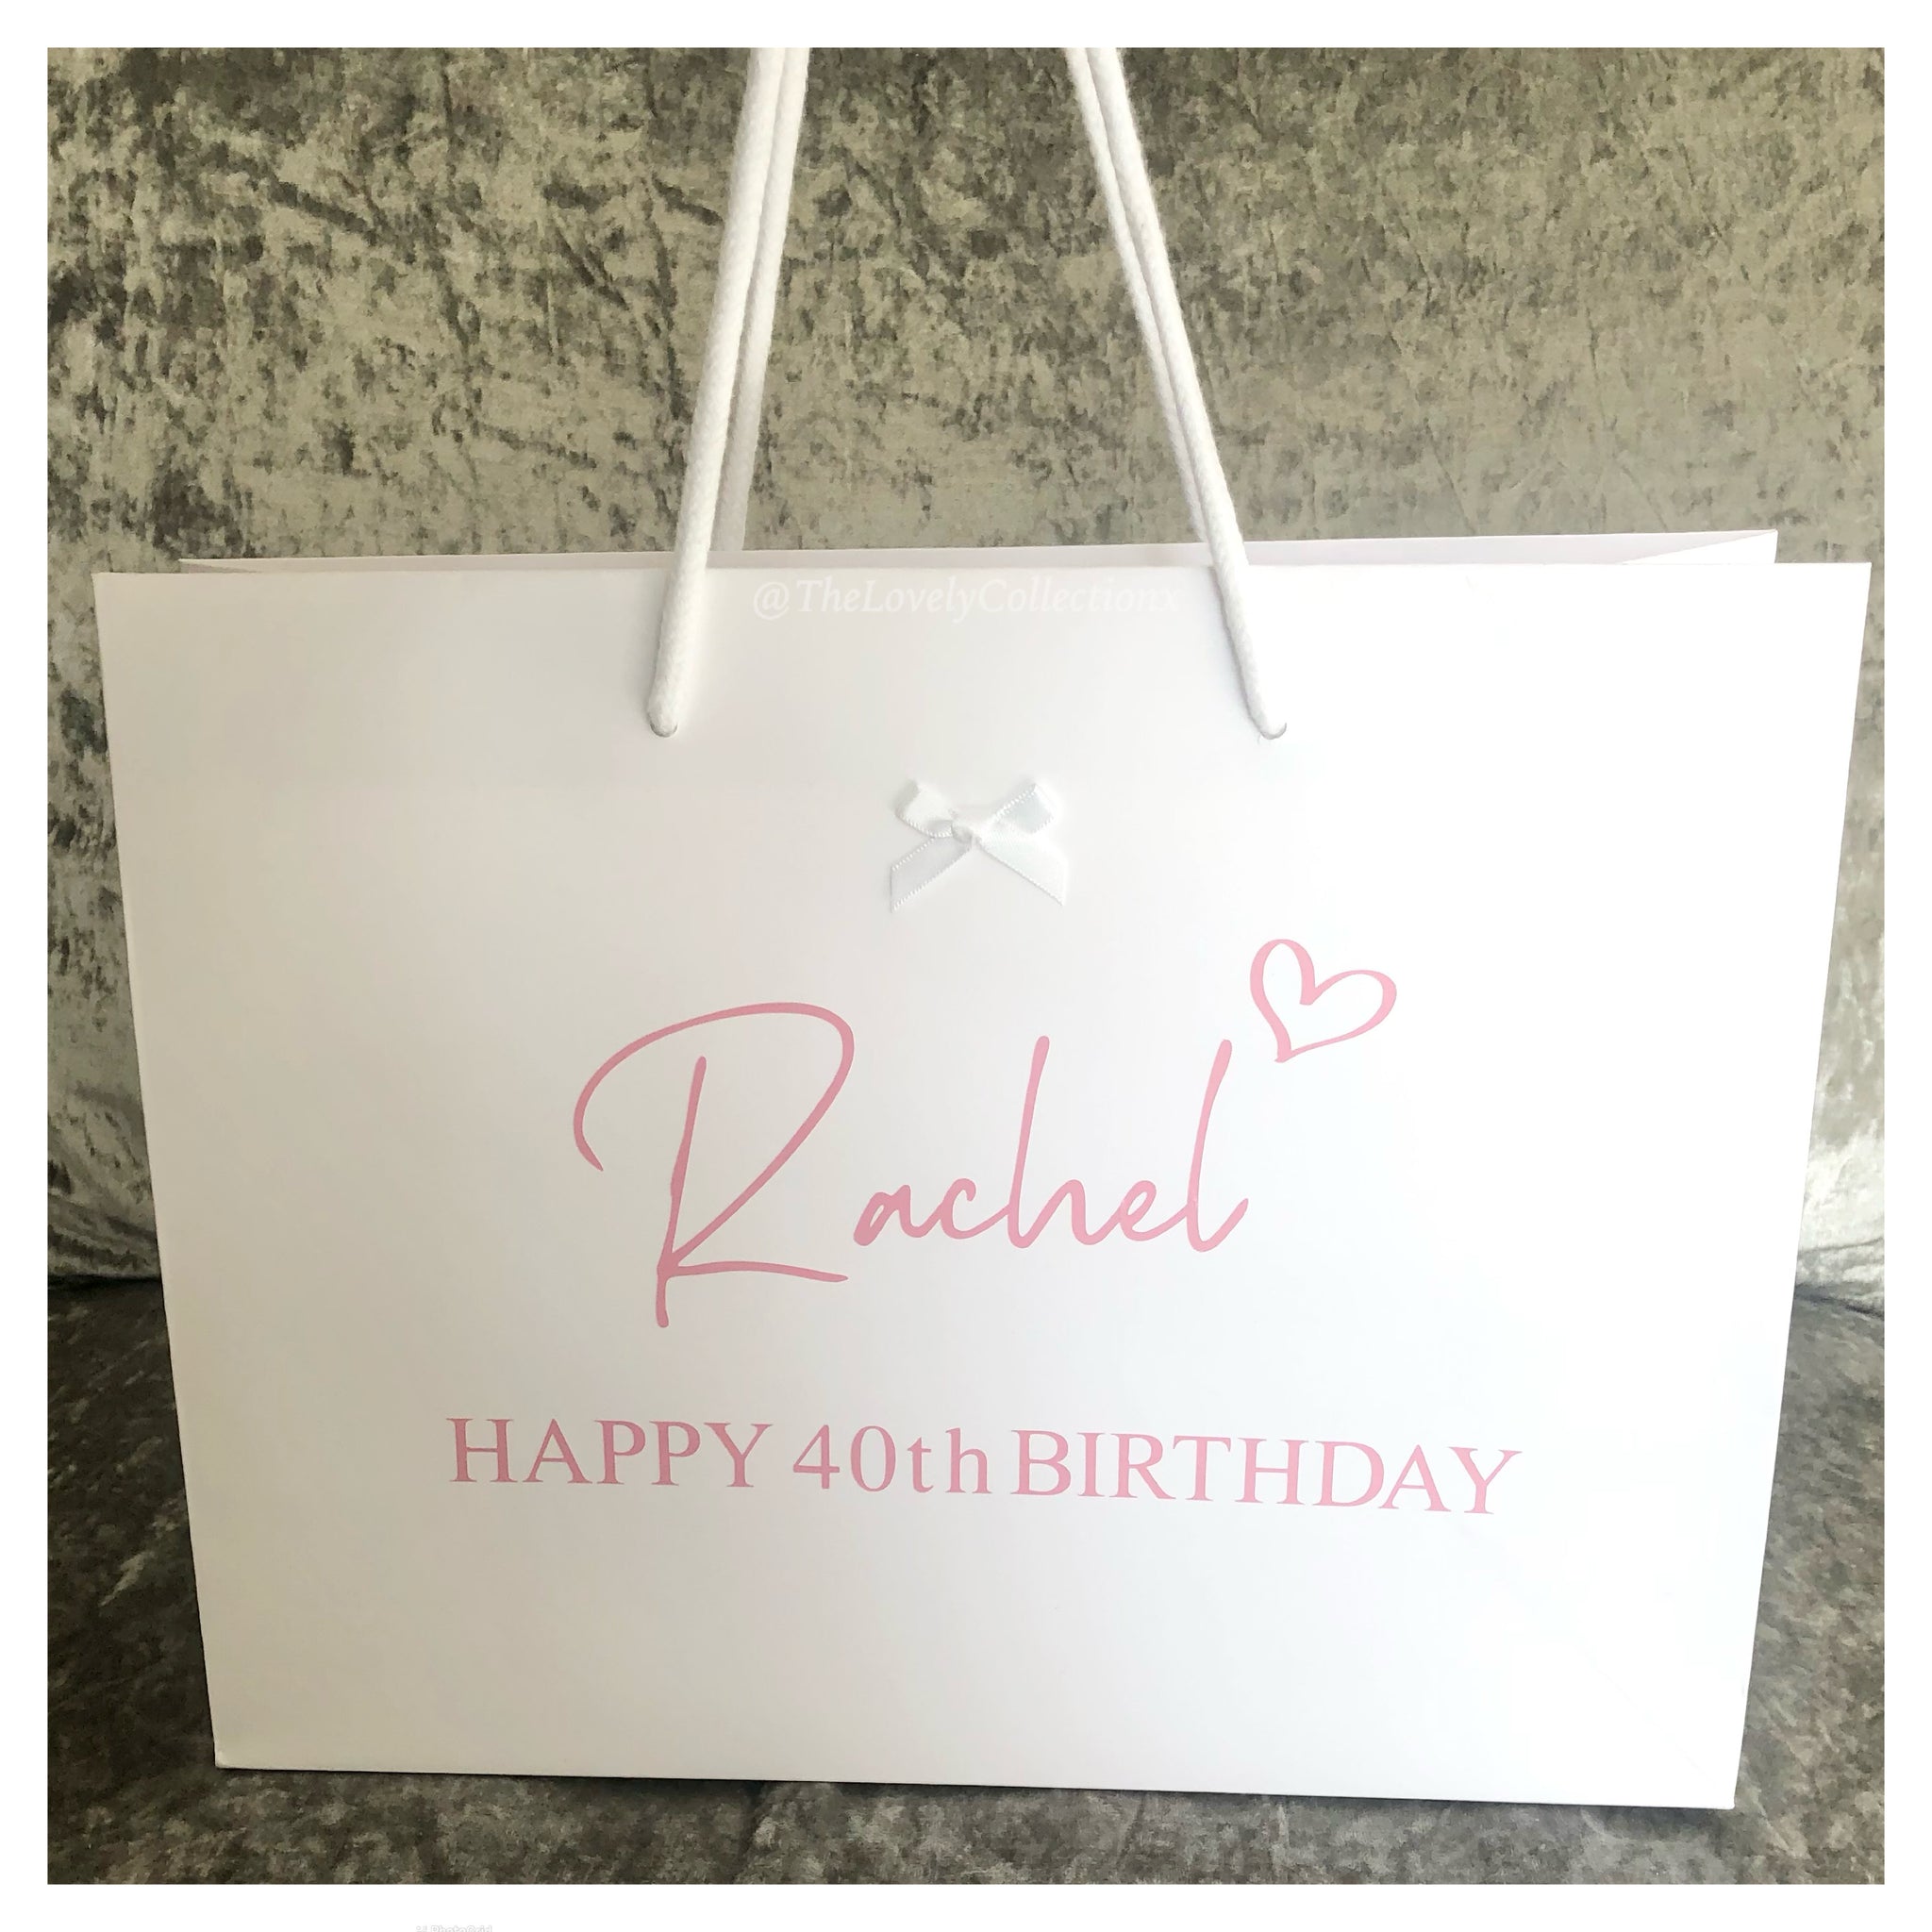 Transparent Gift Bags Handbag Wedding Tote Gift Bag For Birthday